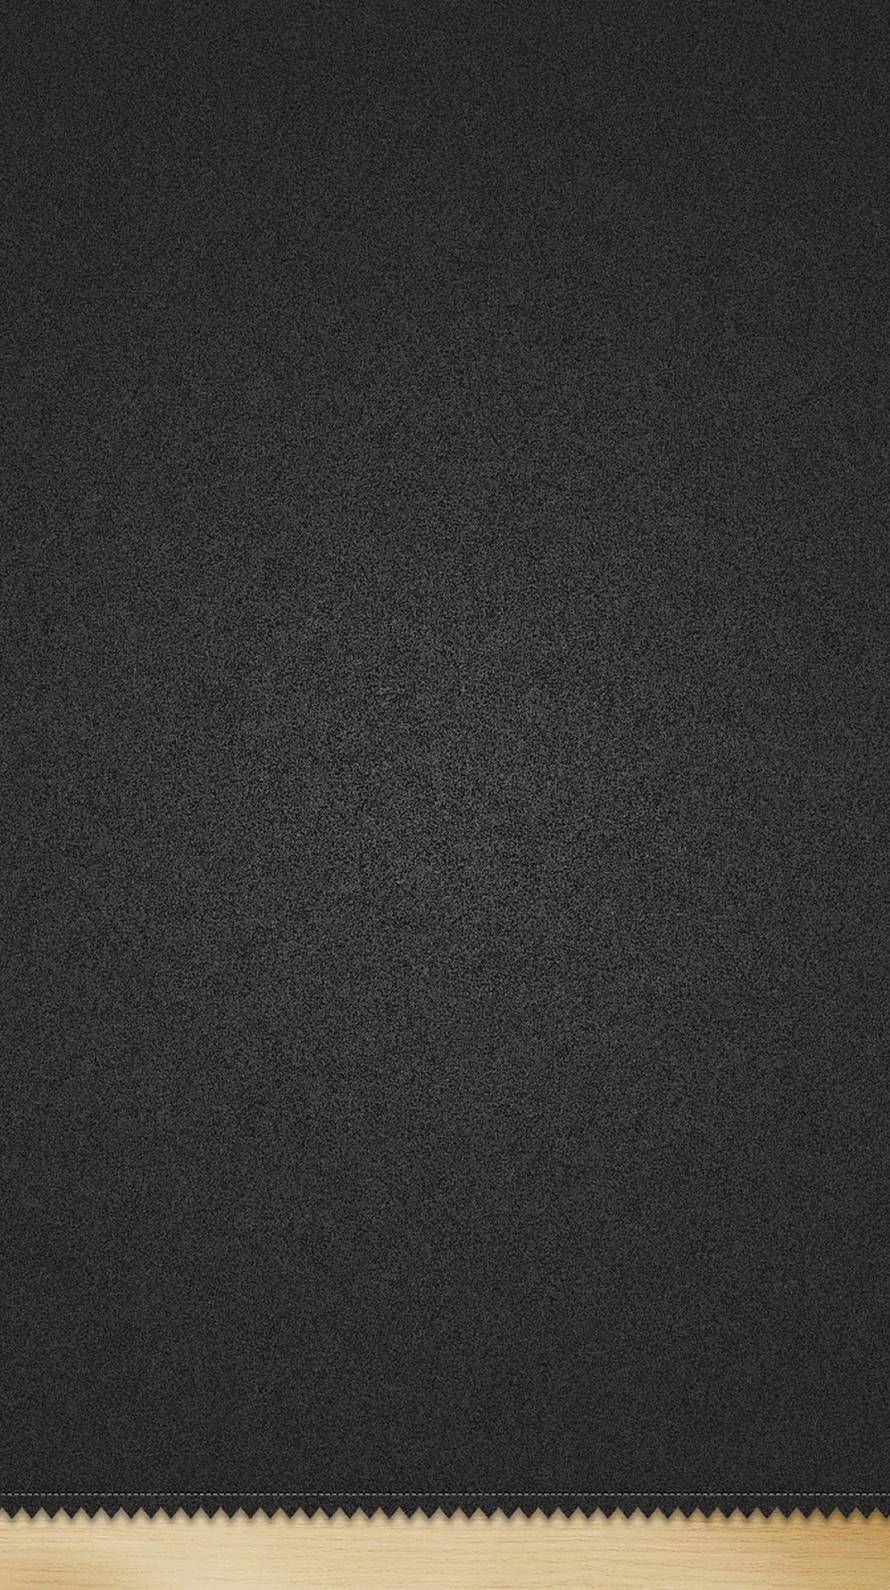 木地に黒 iPhone6壁紙